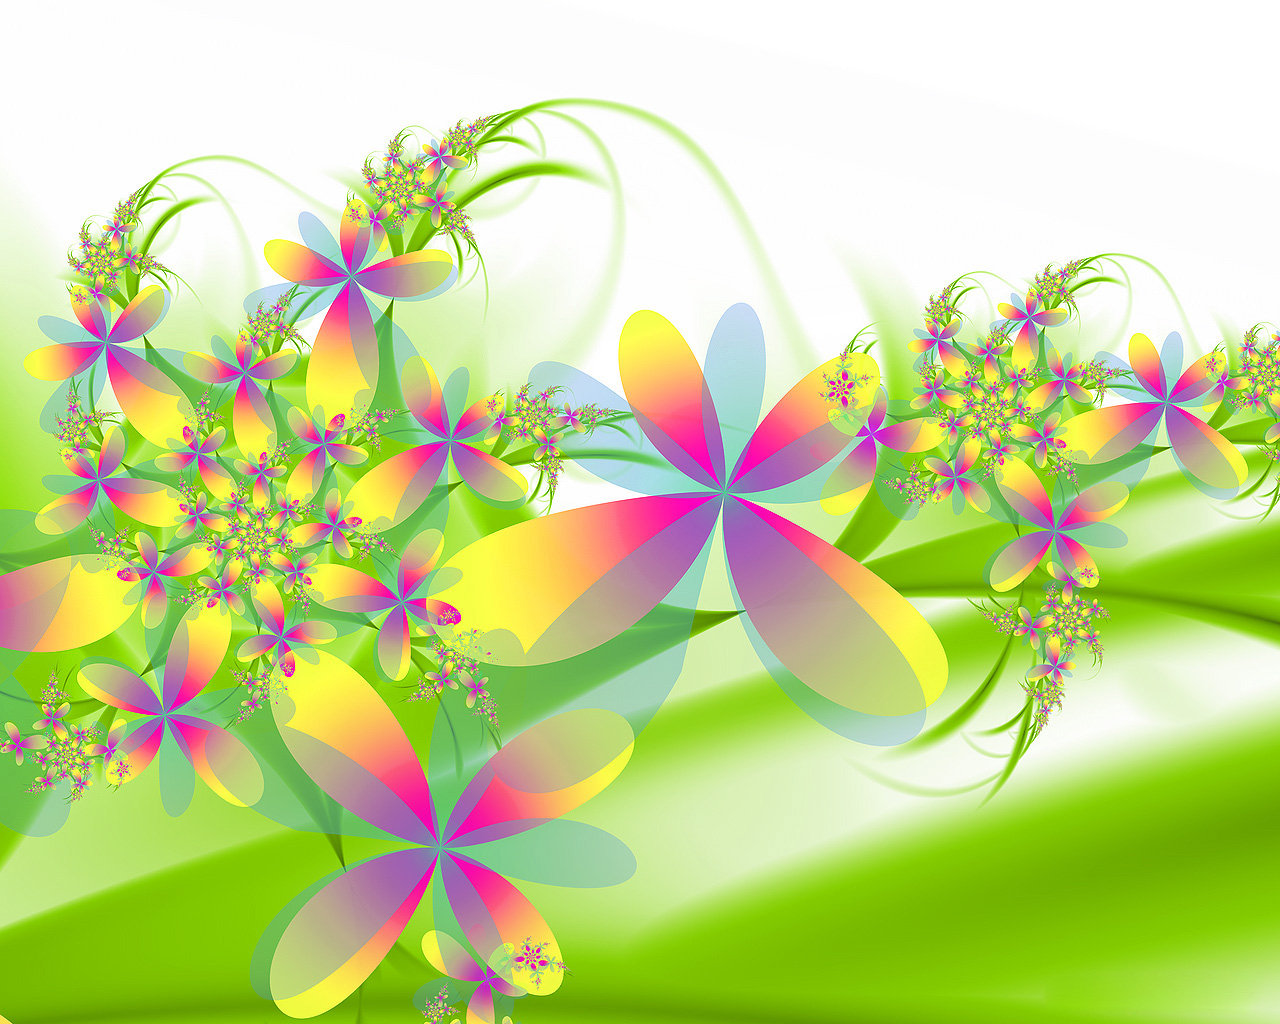 Flowers Desktop wallpapers 1280x1024 1280x1024